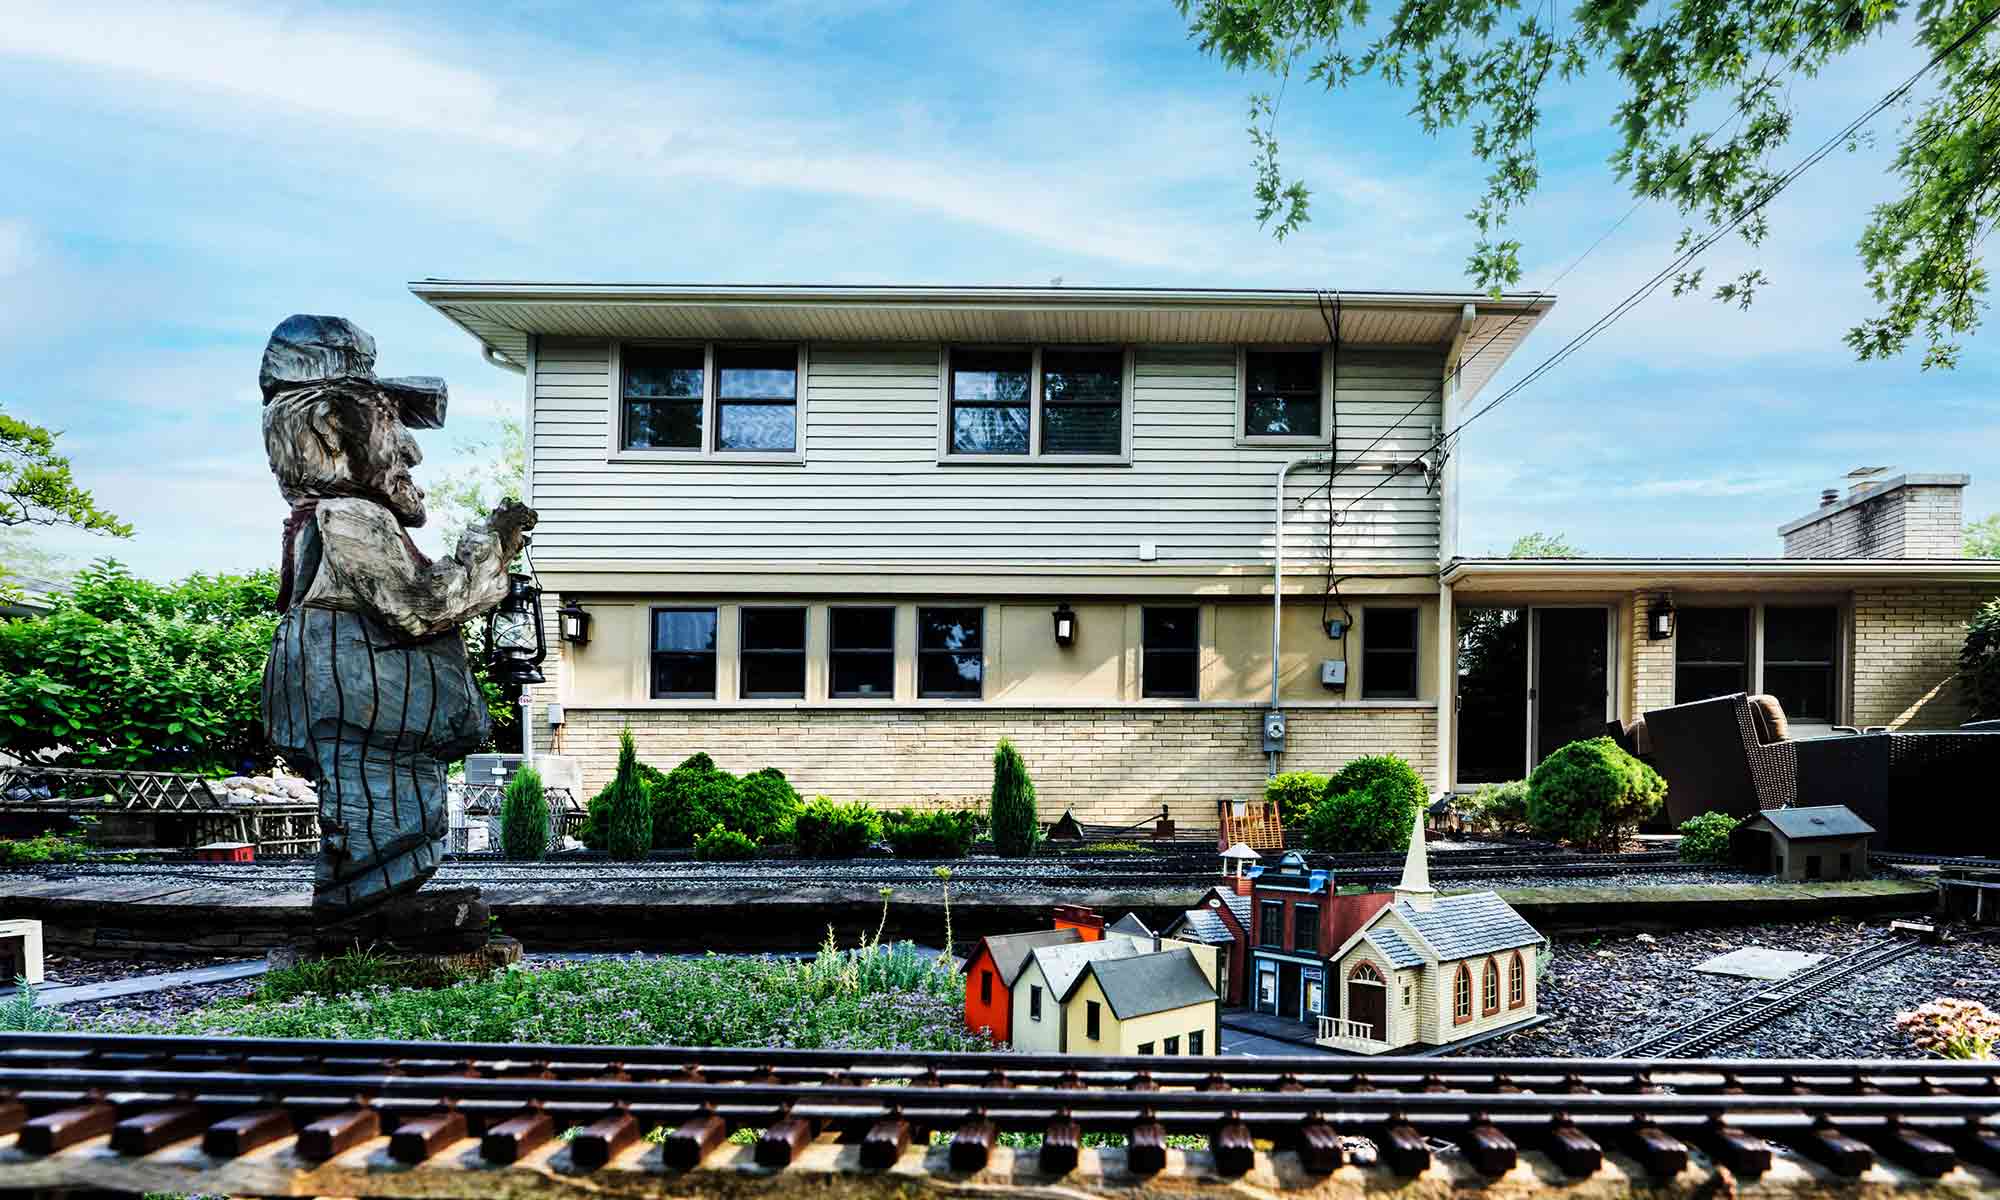 A house with train tracks